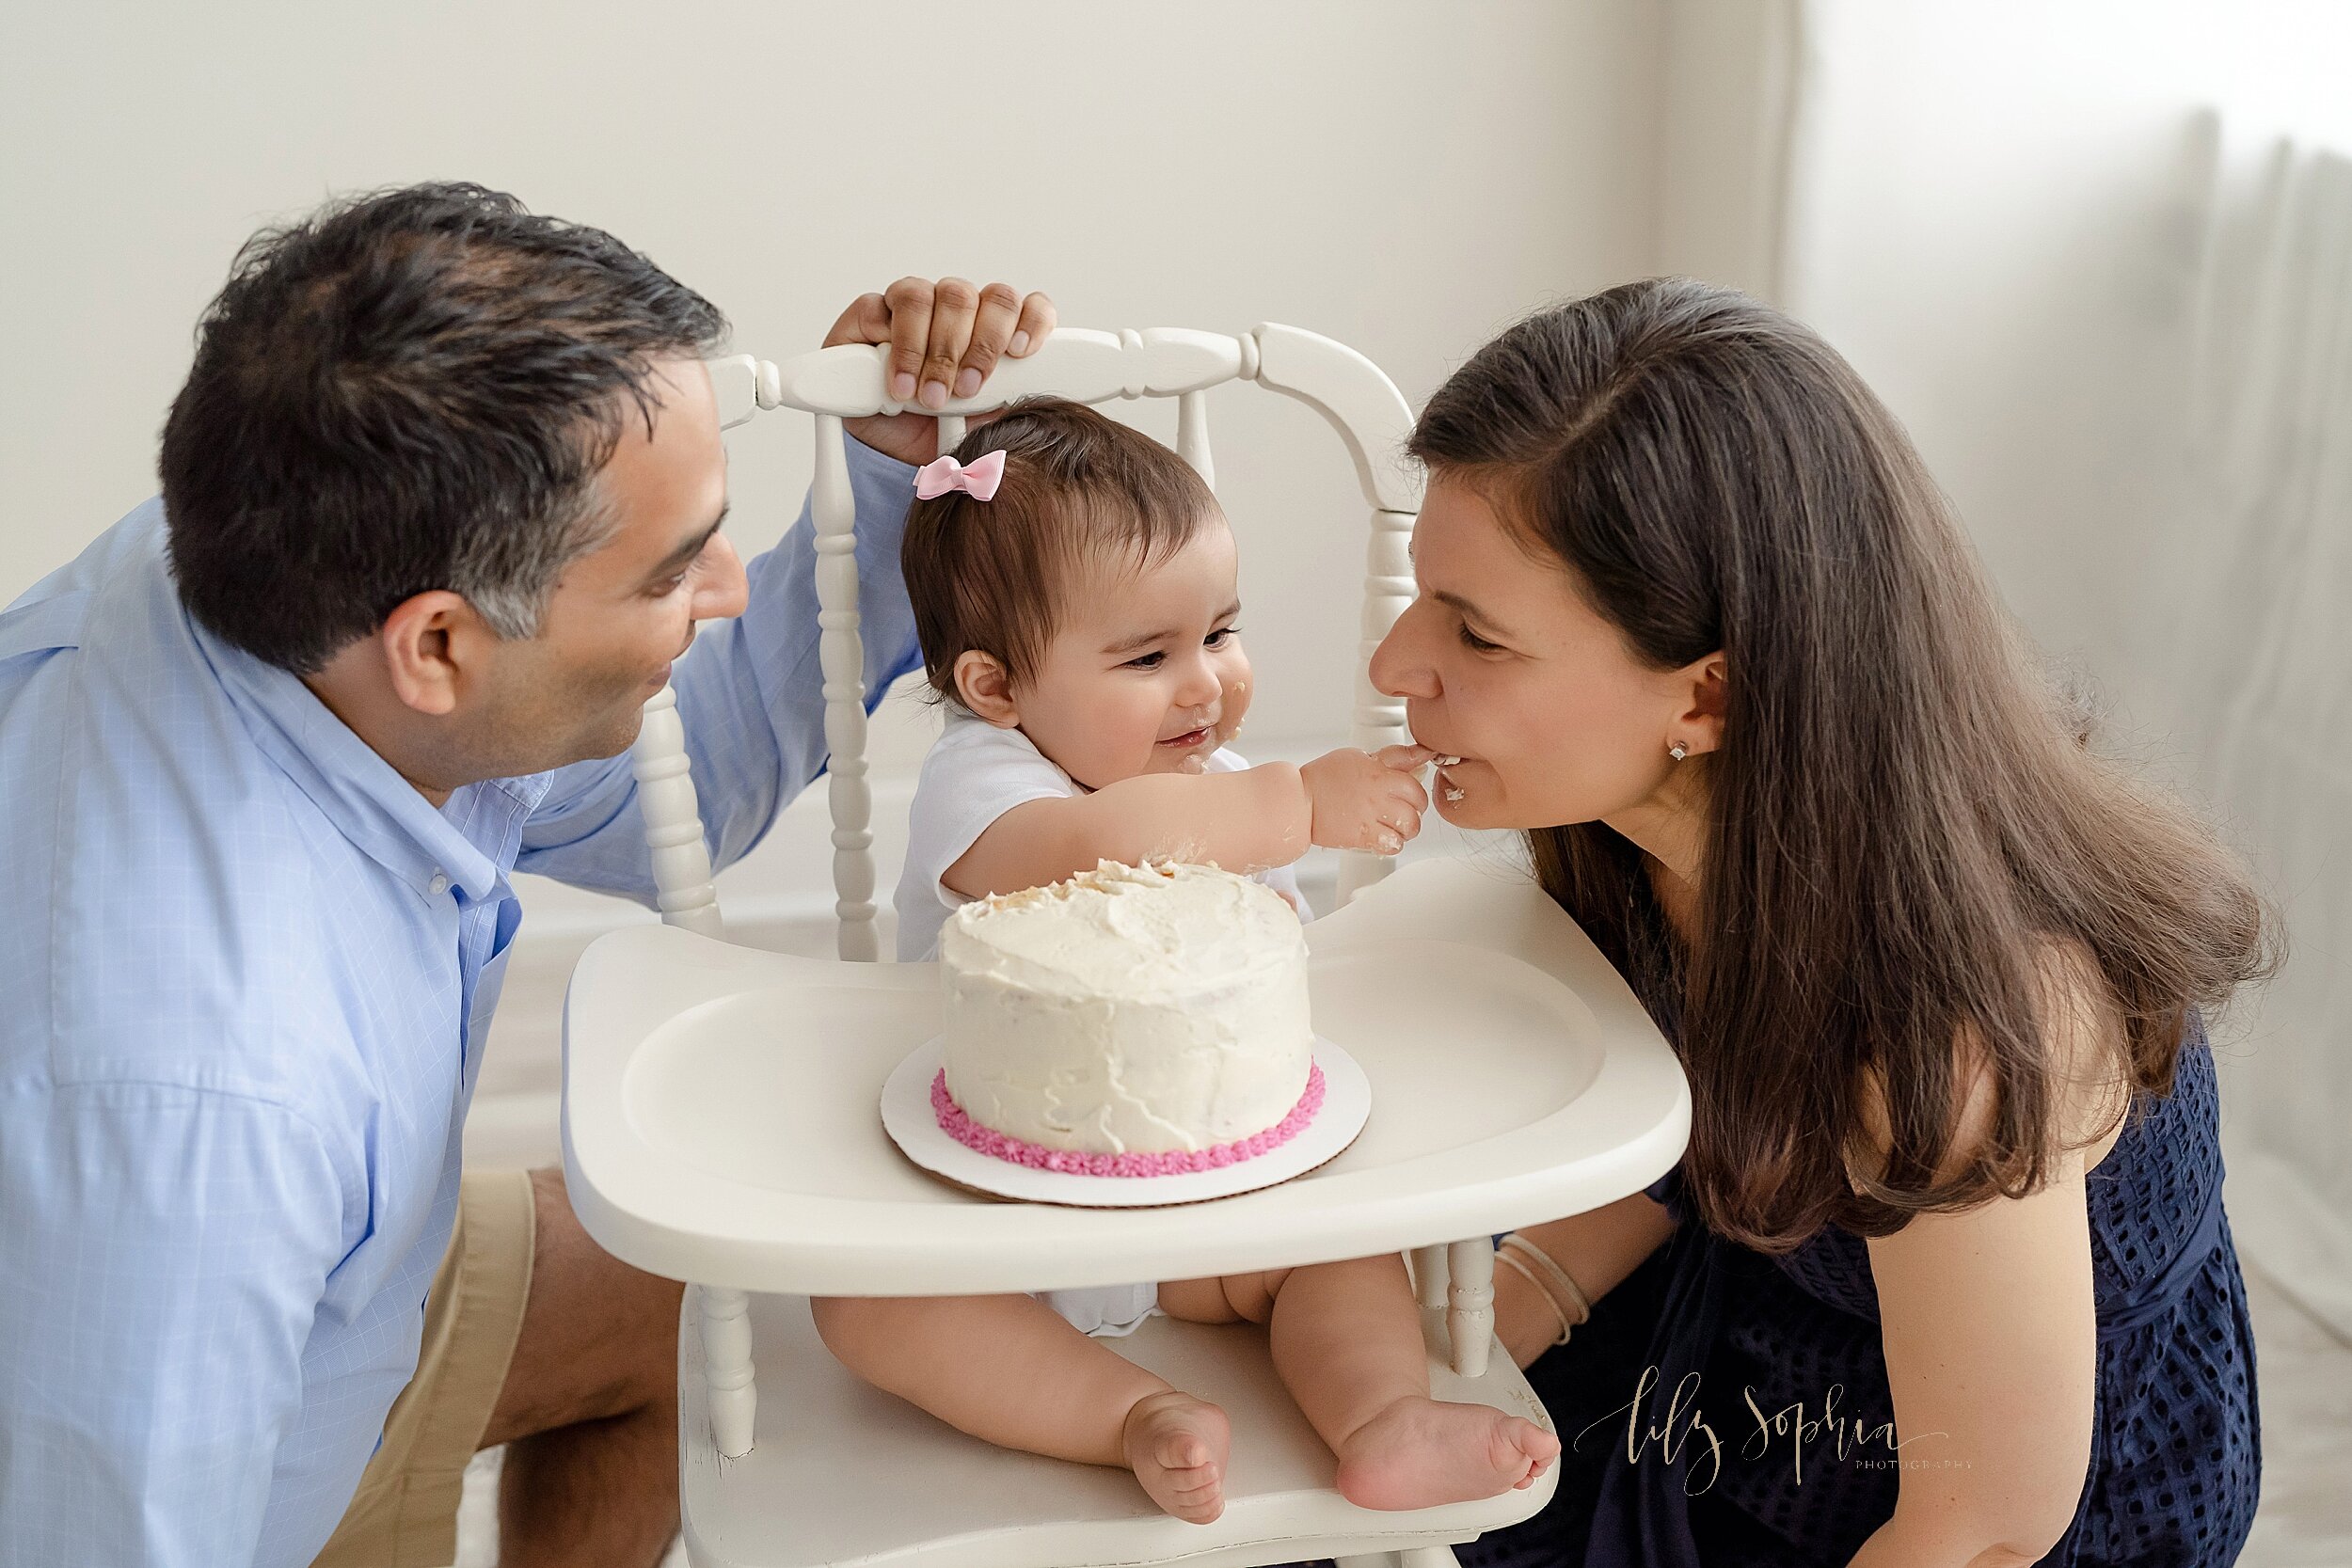 atlanta-georgia-buckhead-brookhaven-midtown-milestone-first-birthday-cake-smash-baby-girl-family-pictures_5643.jpg